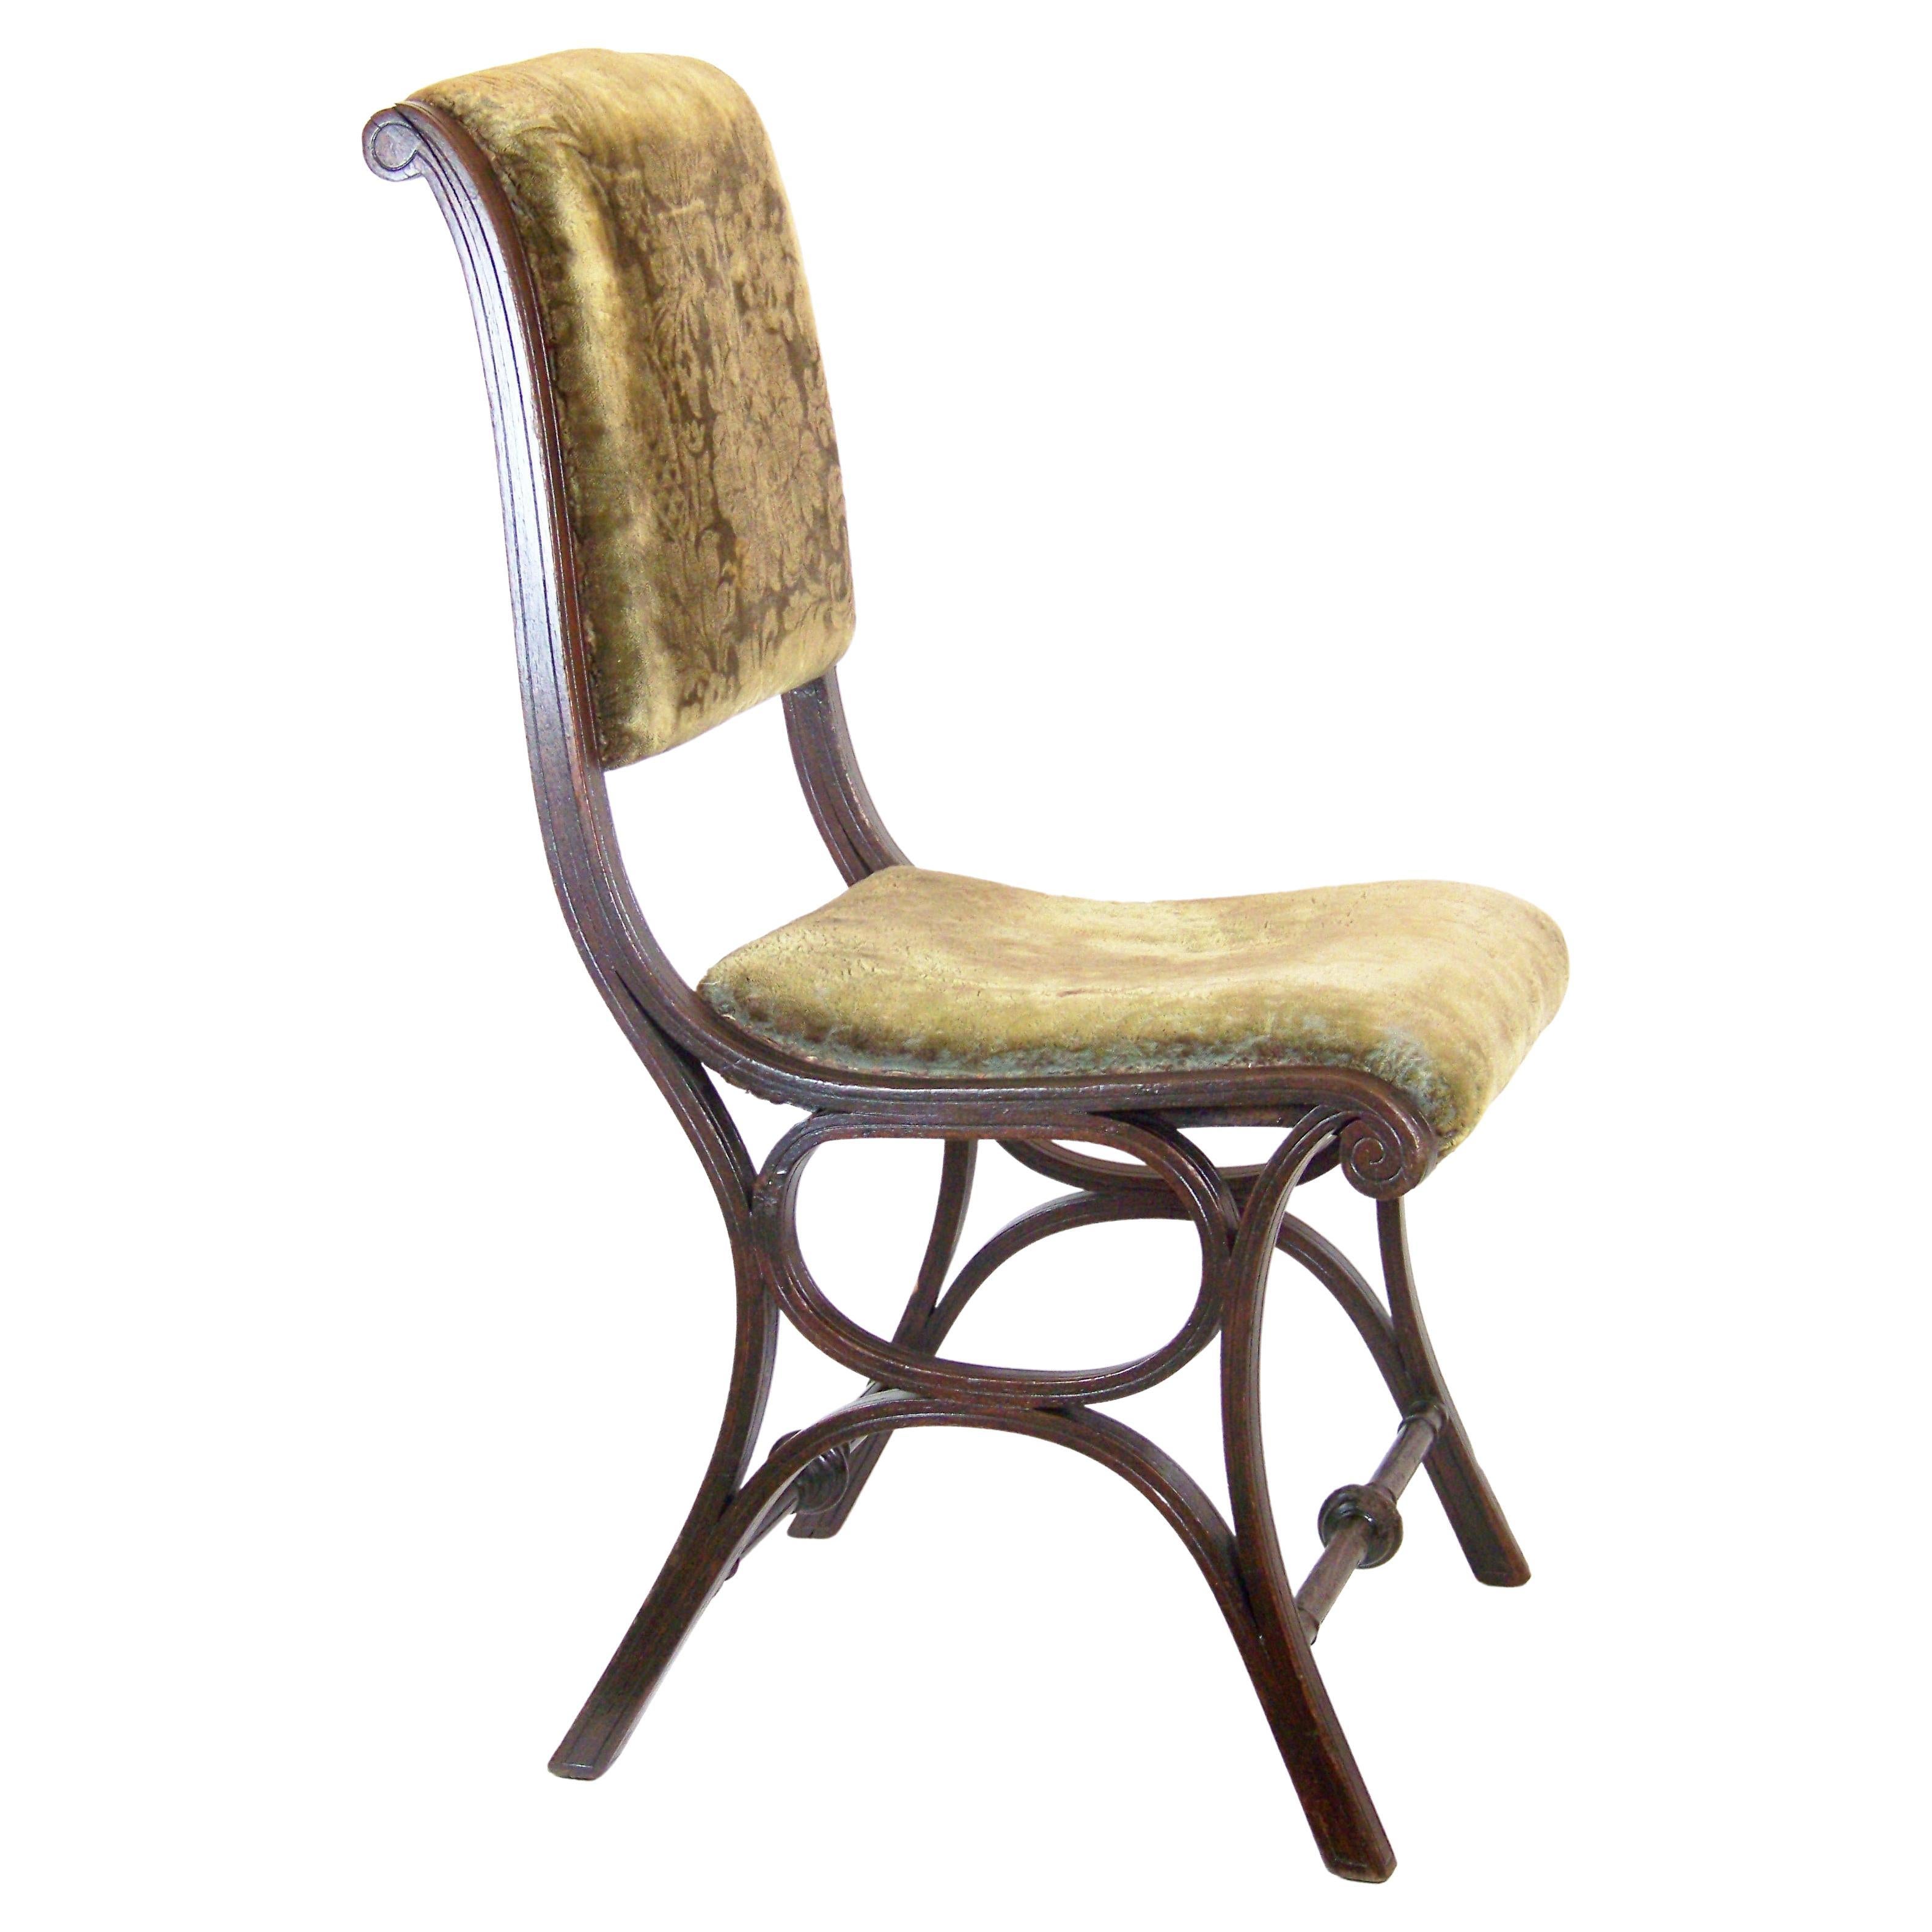 Salon Chair Thonet Nr.2, since 1885